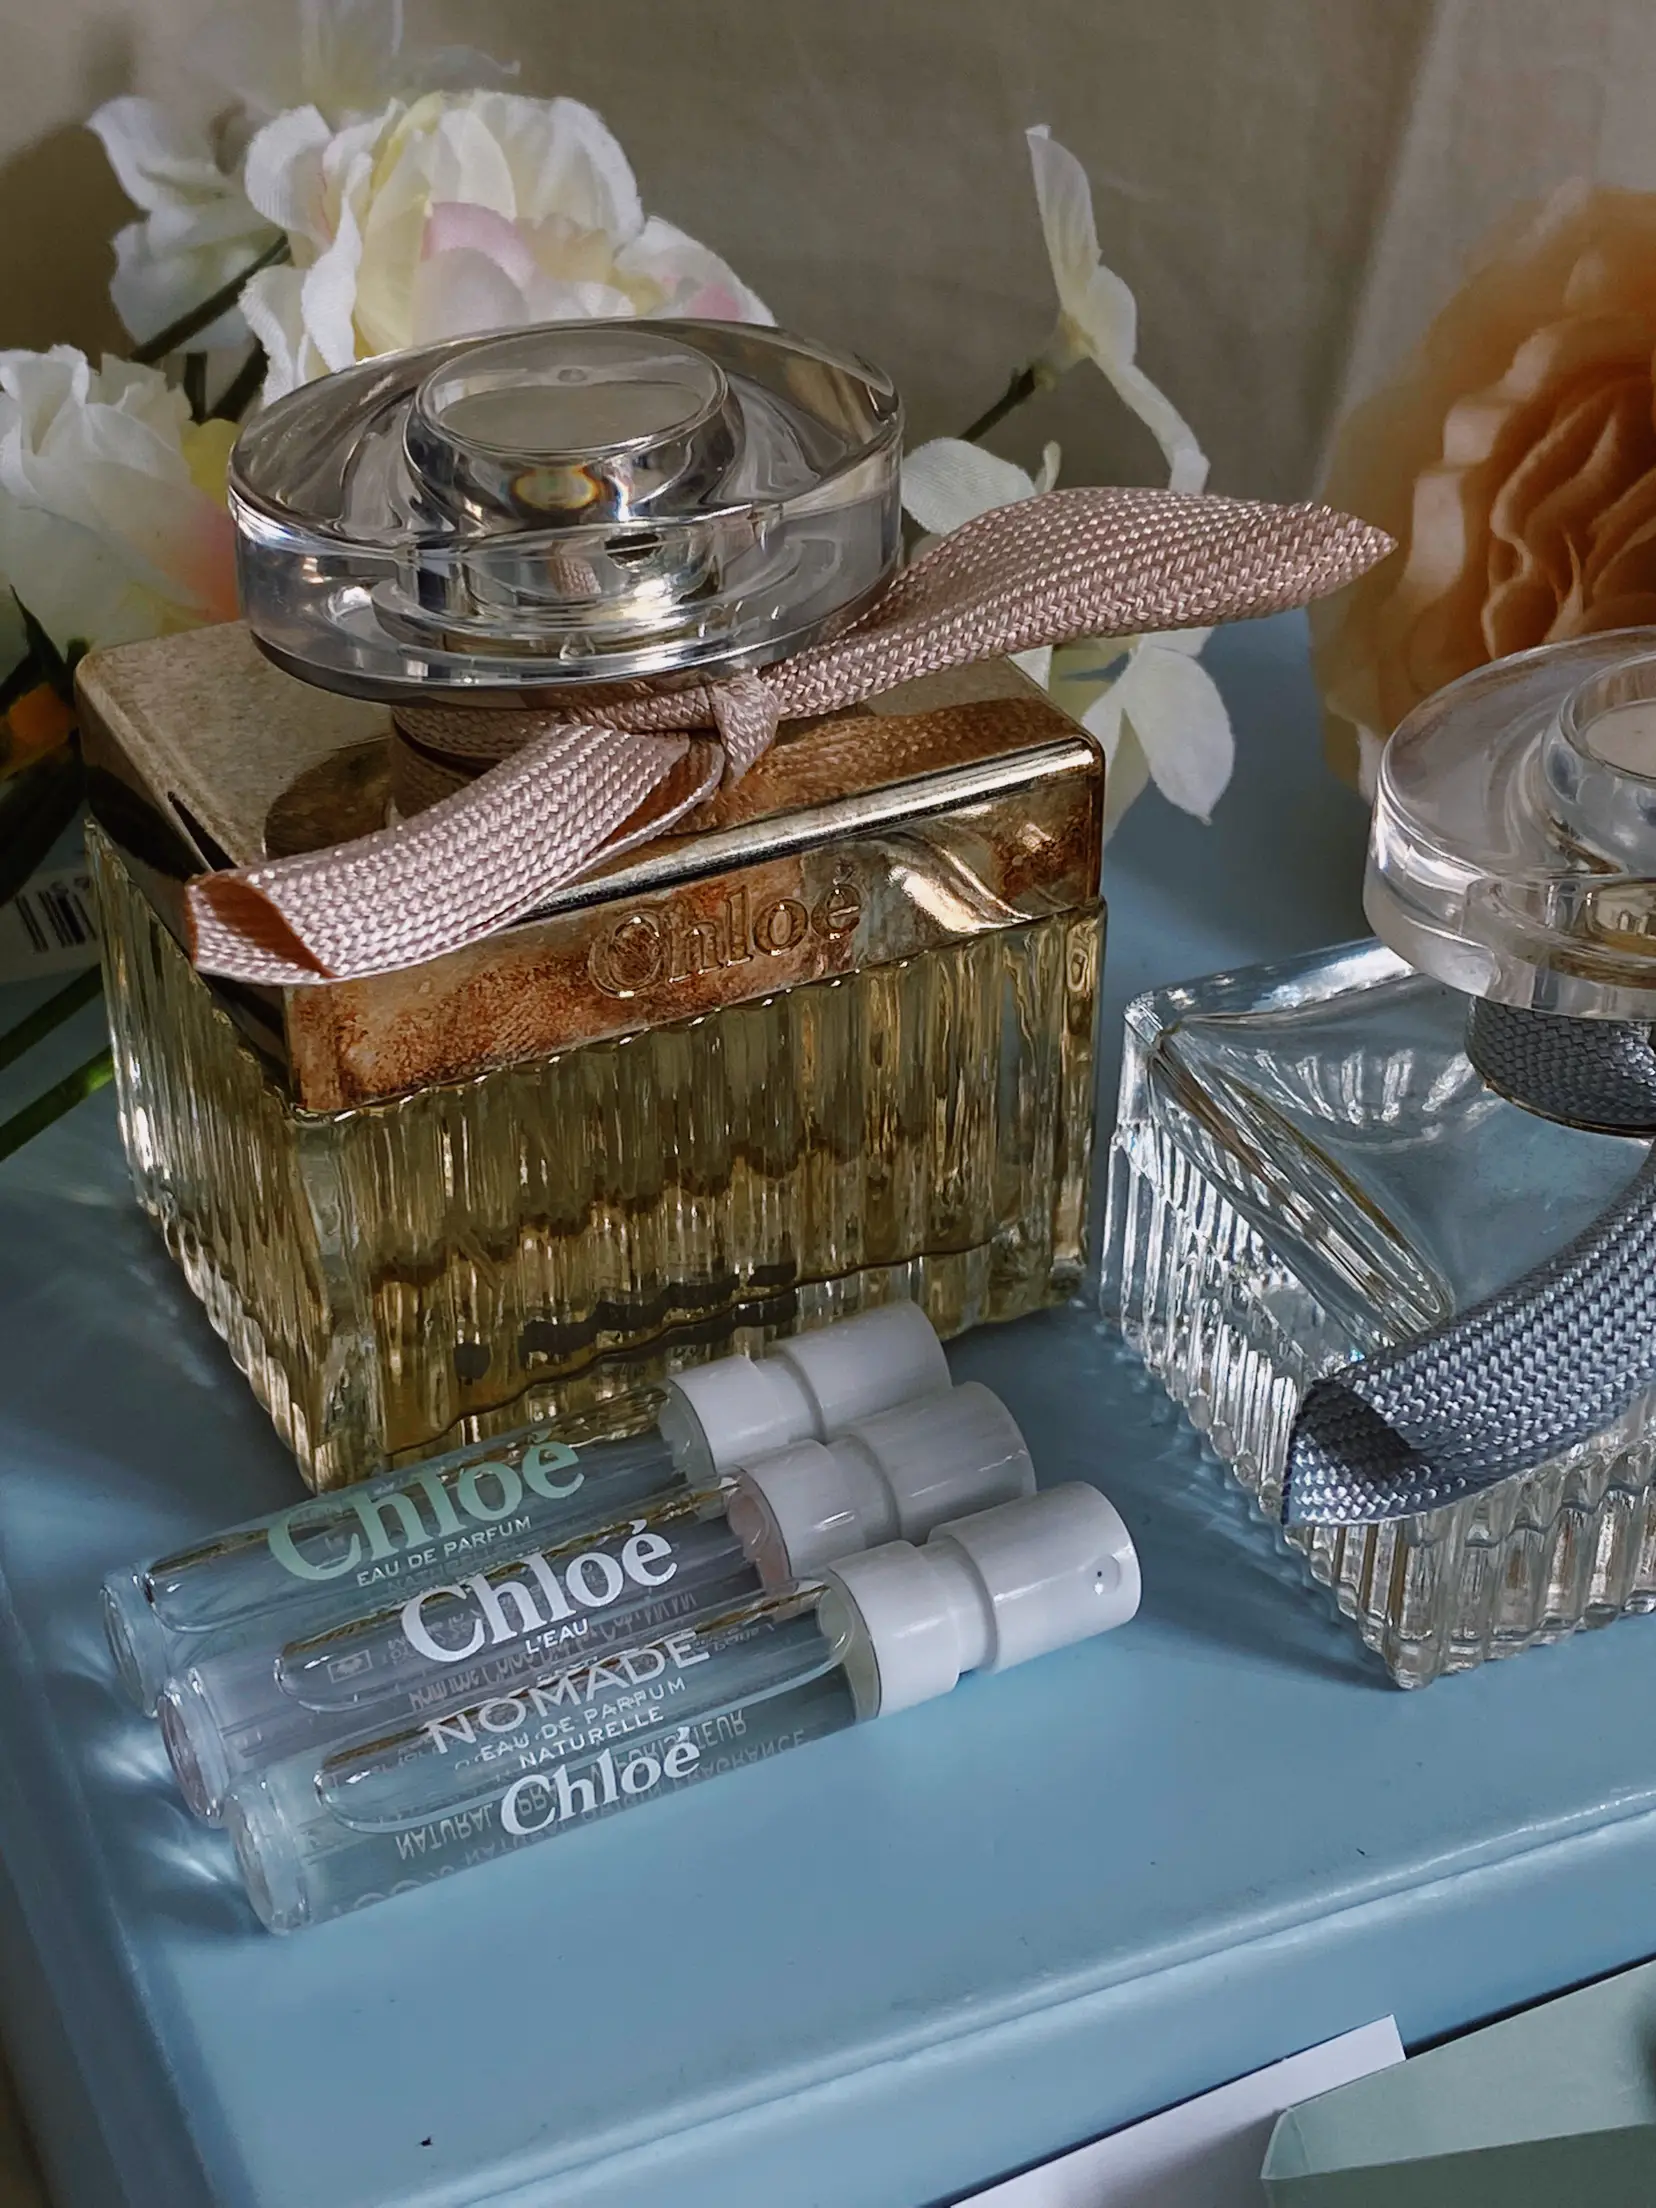 Buy CHLOE Nomade Eau de Parfum Naturelle Online in Singapore